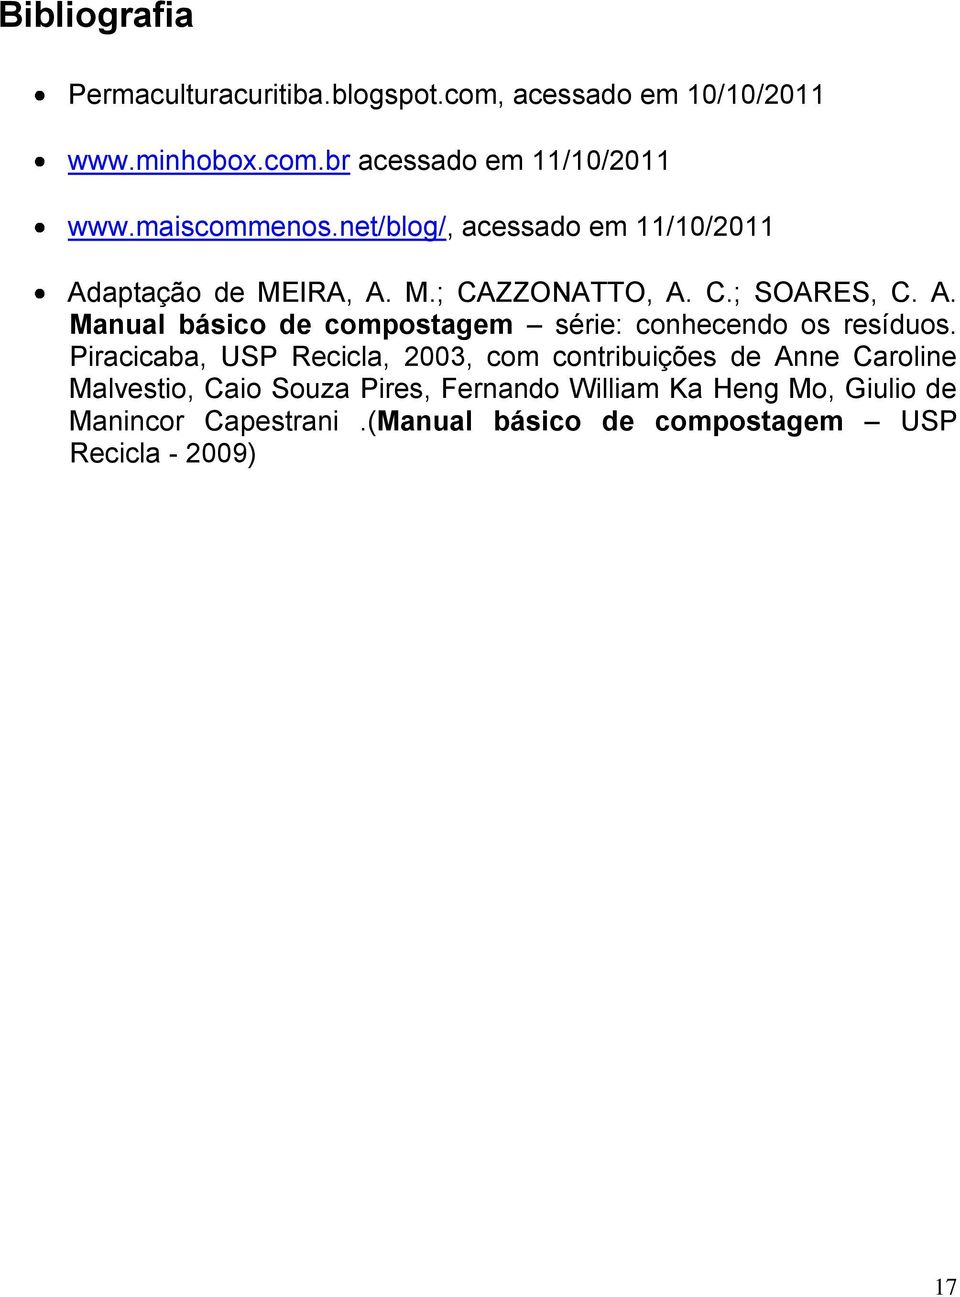 Piracicaba, USP Recicla, 2003, com contribuições de Anne Caroline Malvestio, Caio Souza Pires, Fernando William Ka Heng